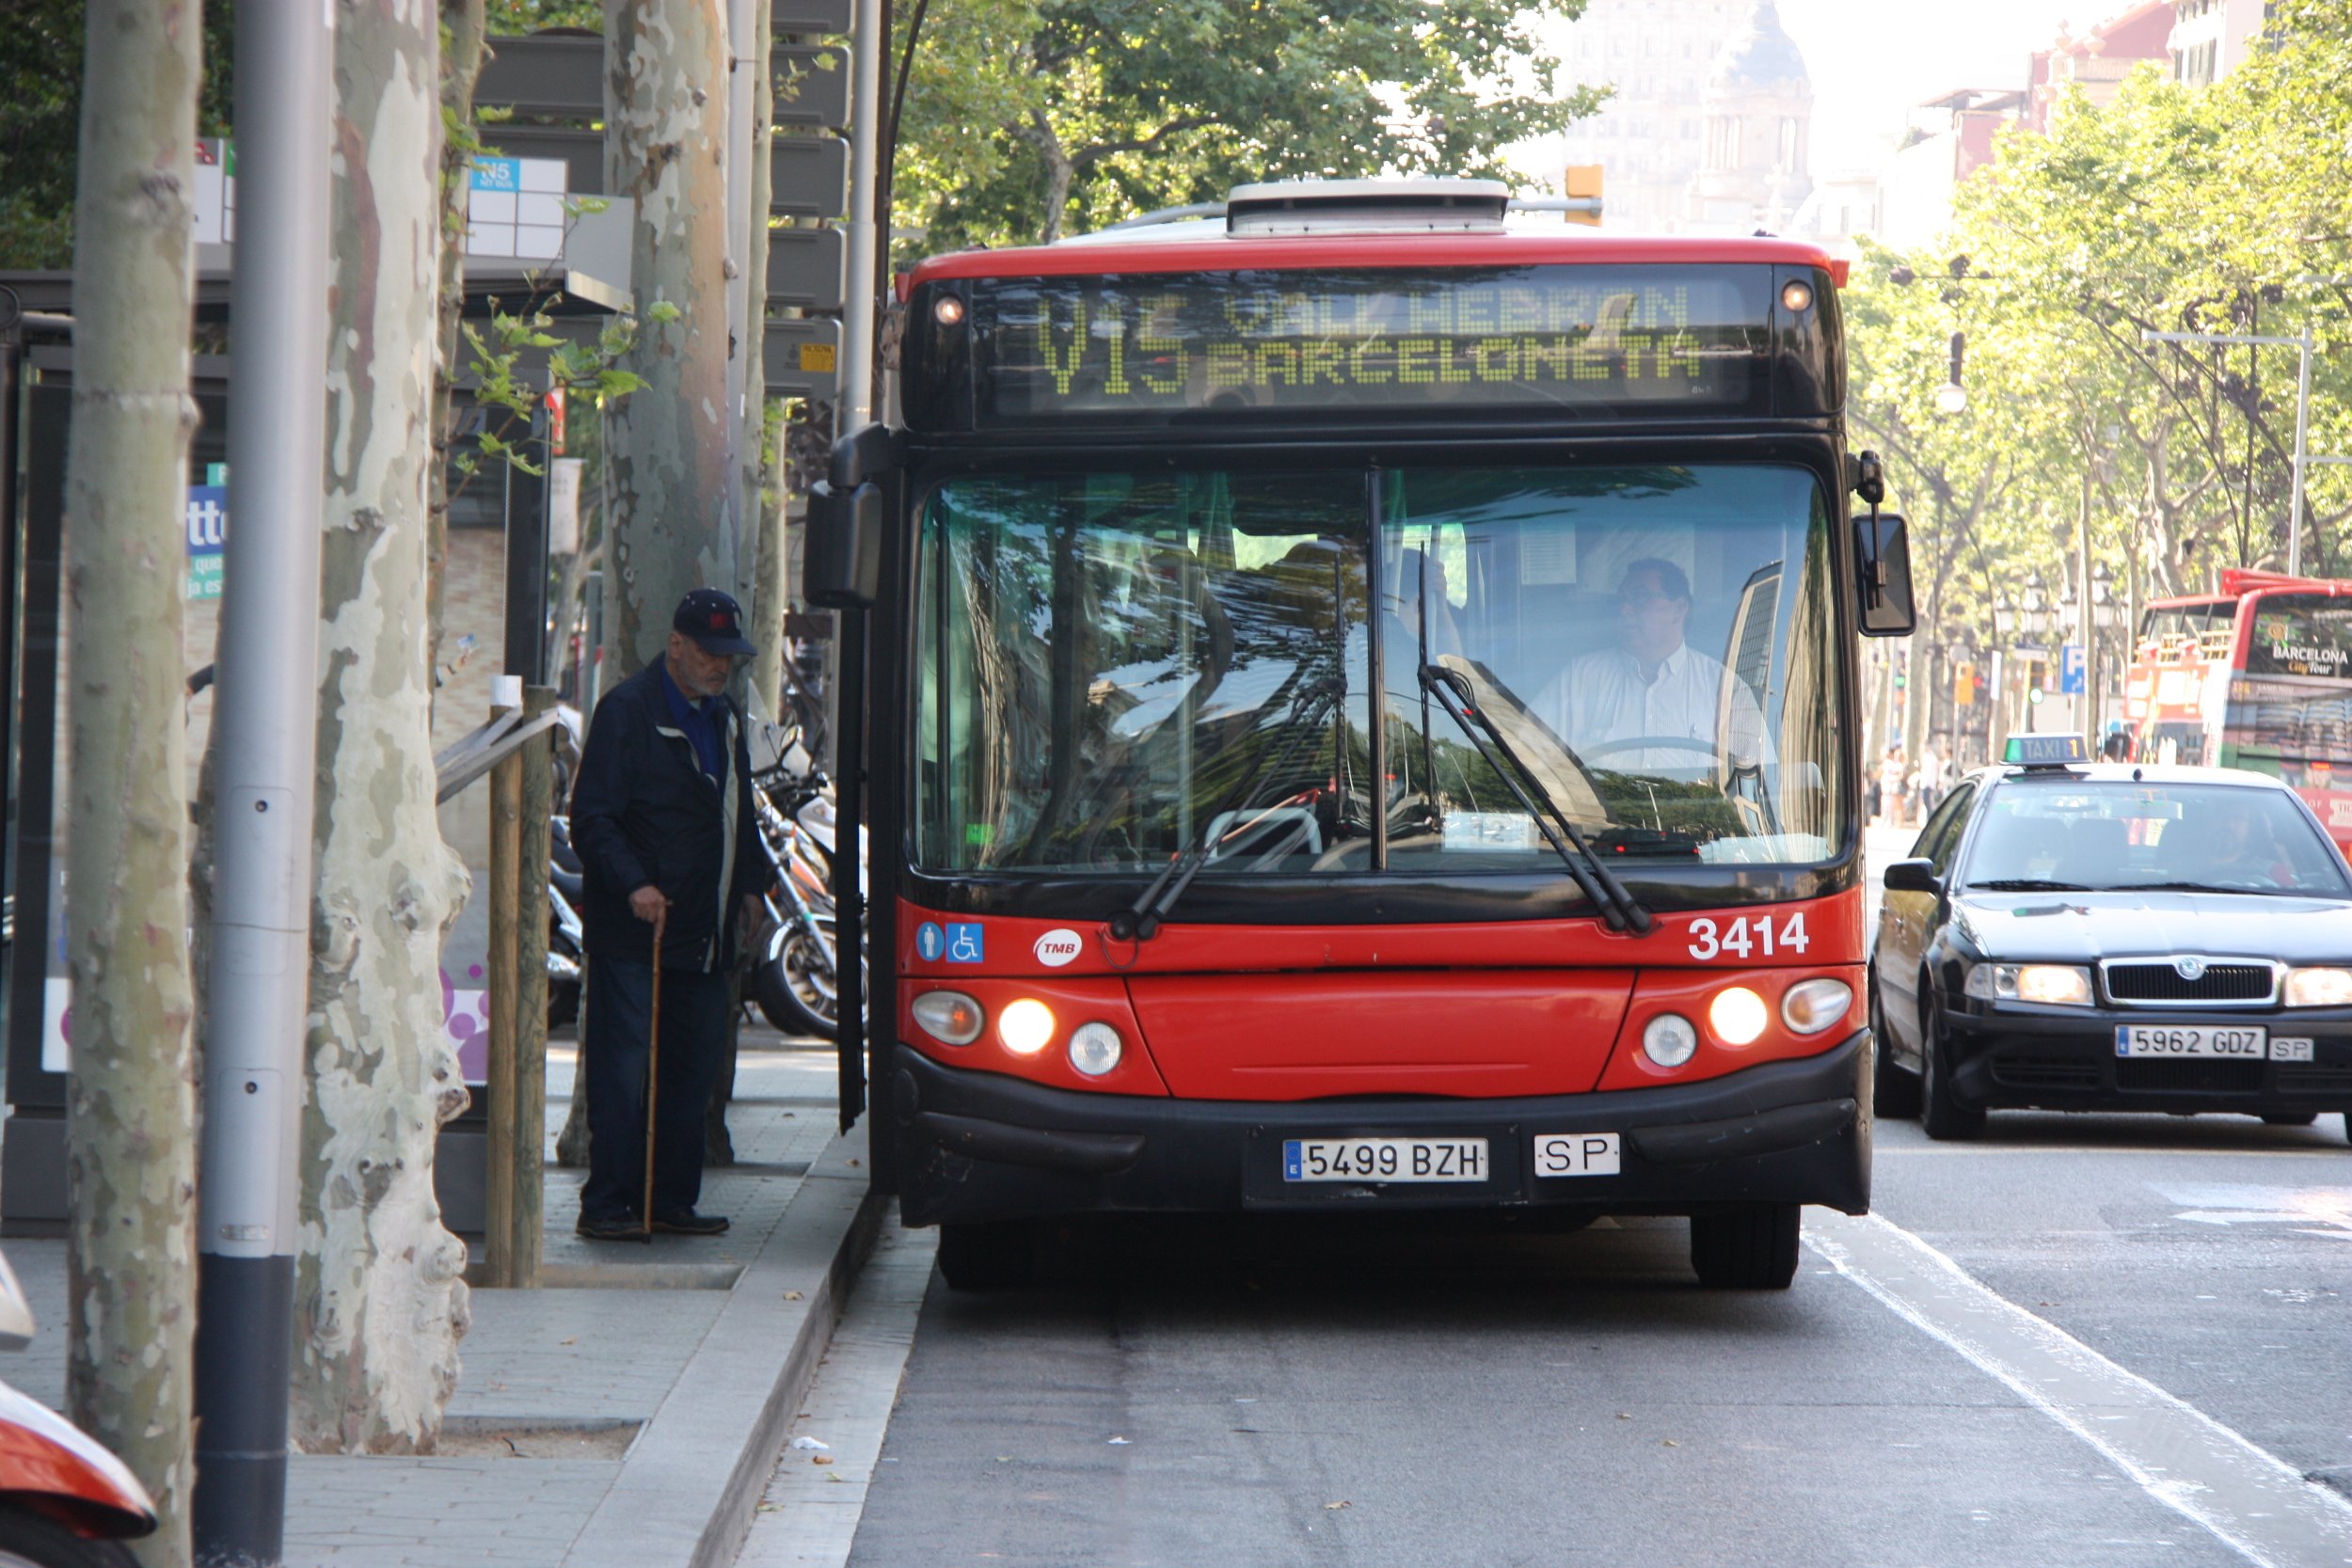 Veïns del Turó de la Rovira denuncien que els turistes pugen al bus sense pagar